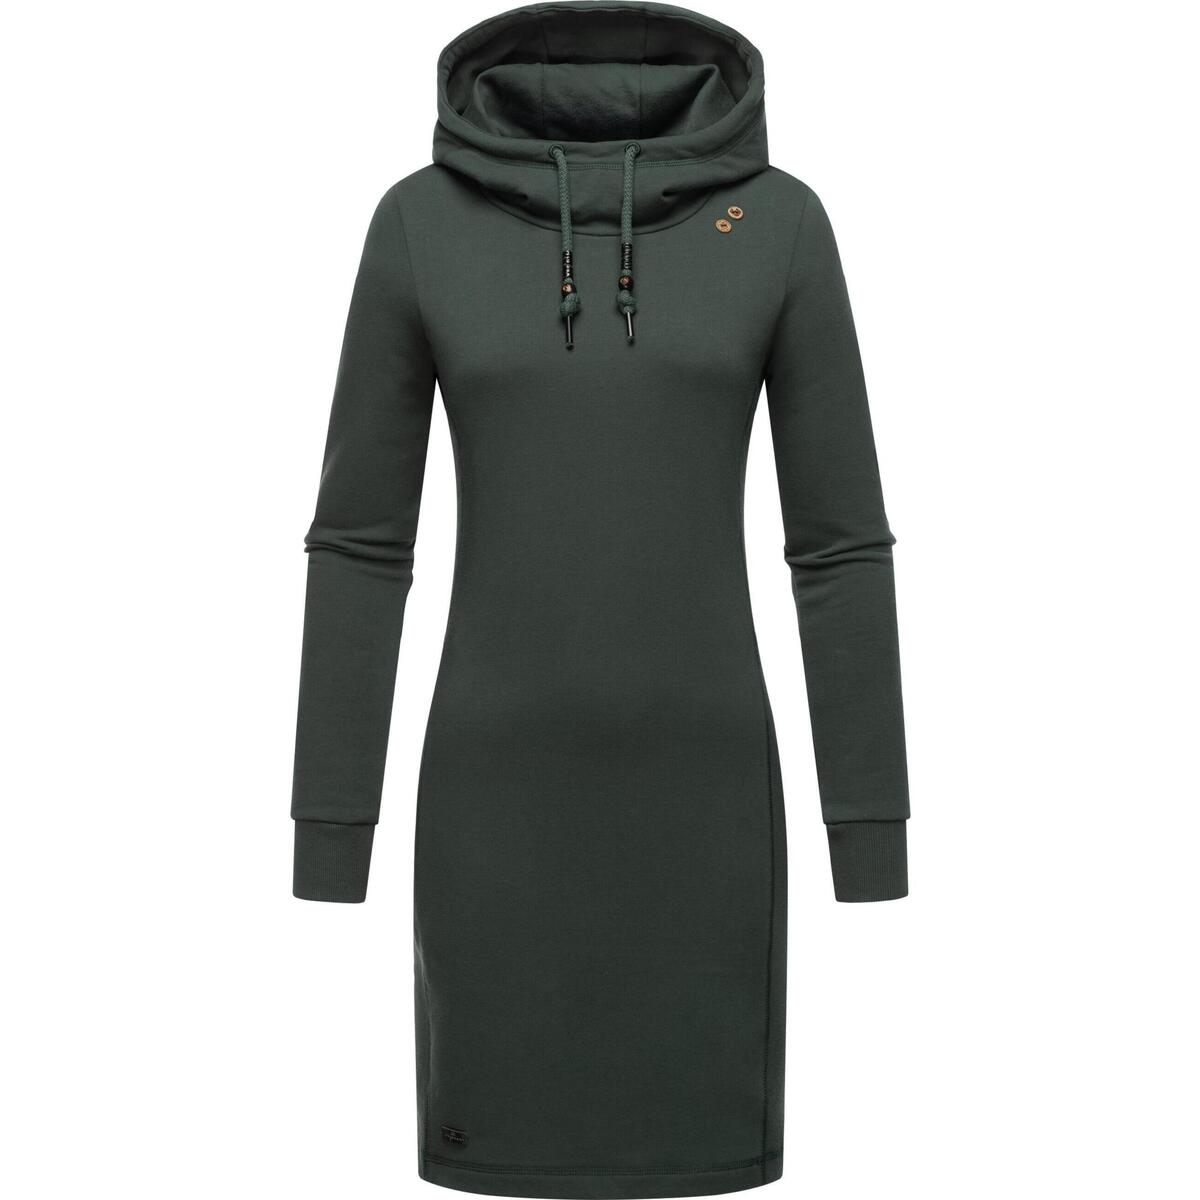 Ragwear Jerseykleid Sabreen Grün - Kleider Kleidung 89,99 € Damen